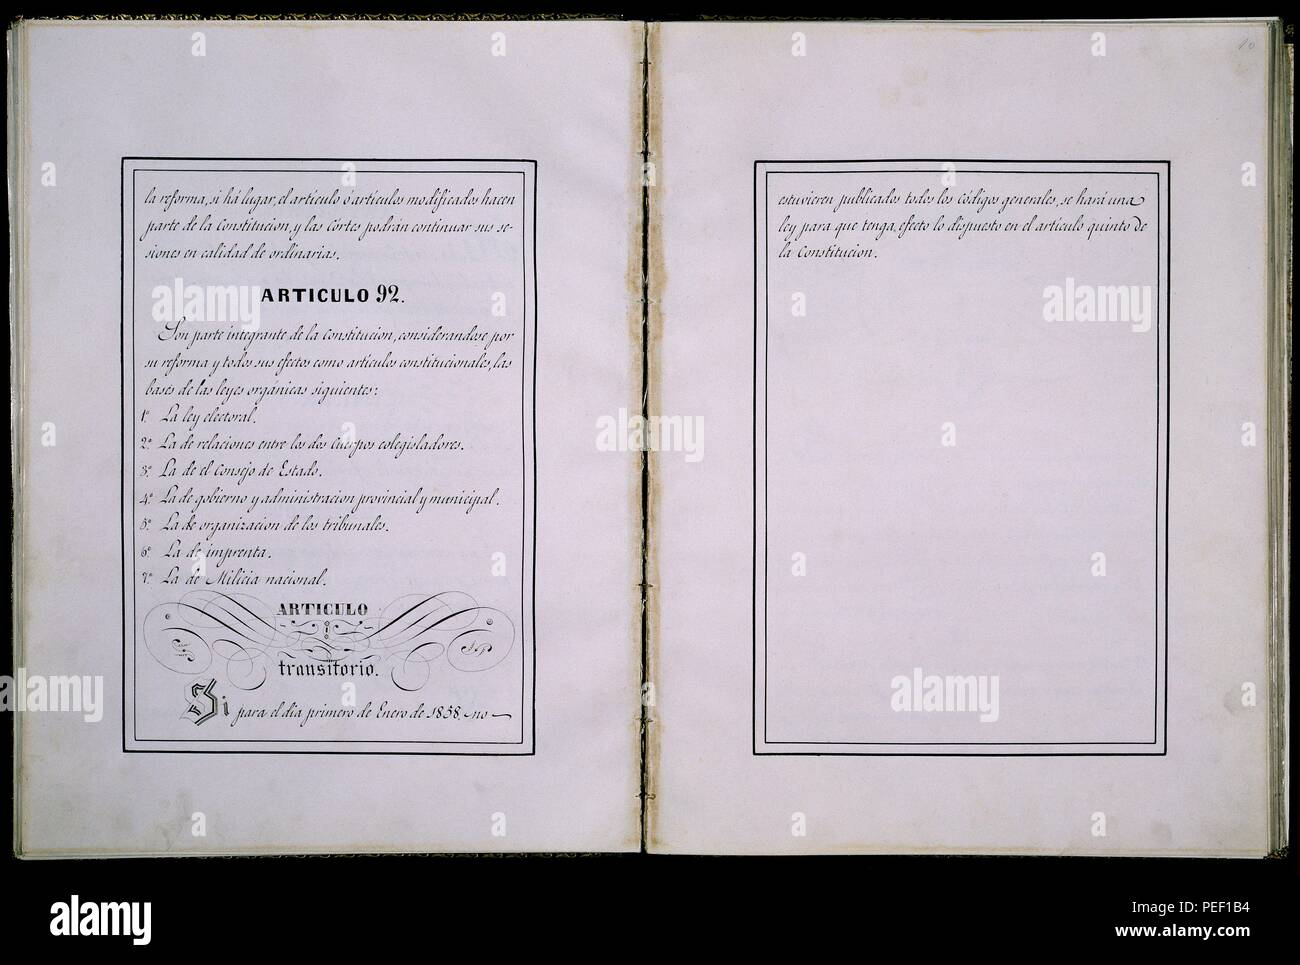 CONSTITUCION DE 1856 - DOBLE PAGINA - ARTICULO 92. Location: CONGRESO DE LOS DIPUTADOS-BIBLIOTECA, MADRID, SPAIN. Stock Photo